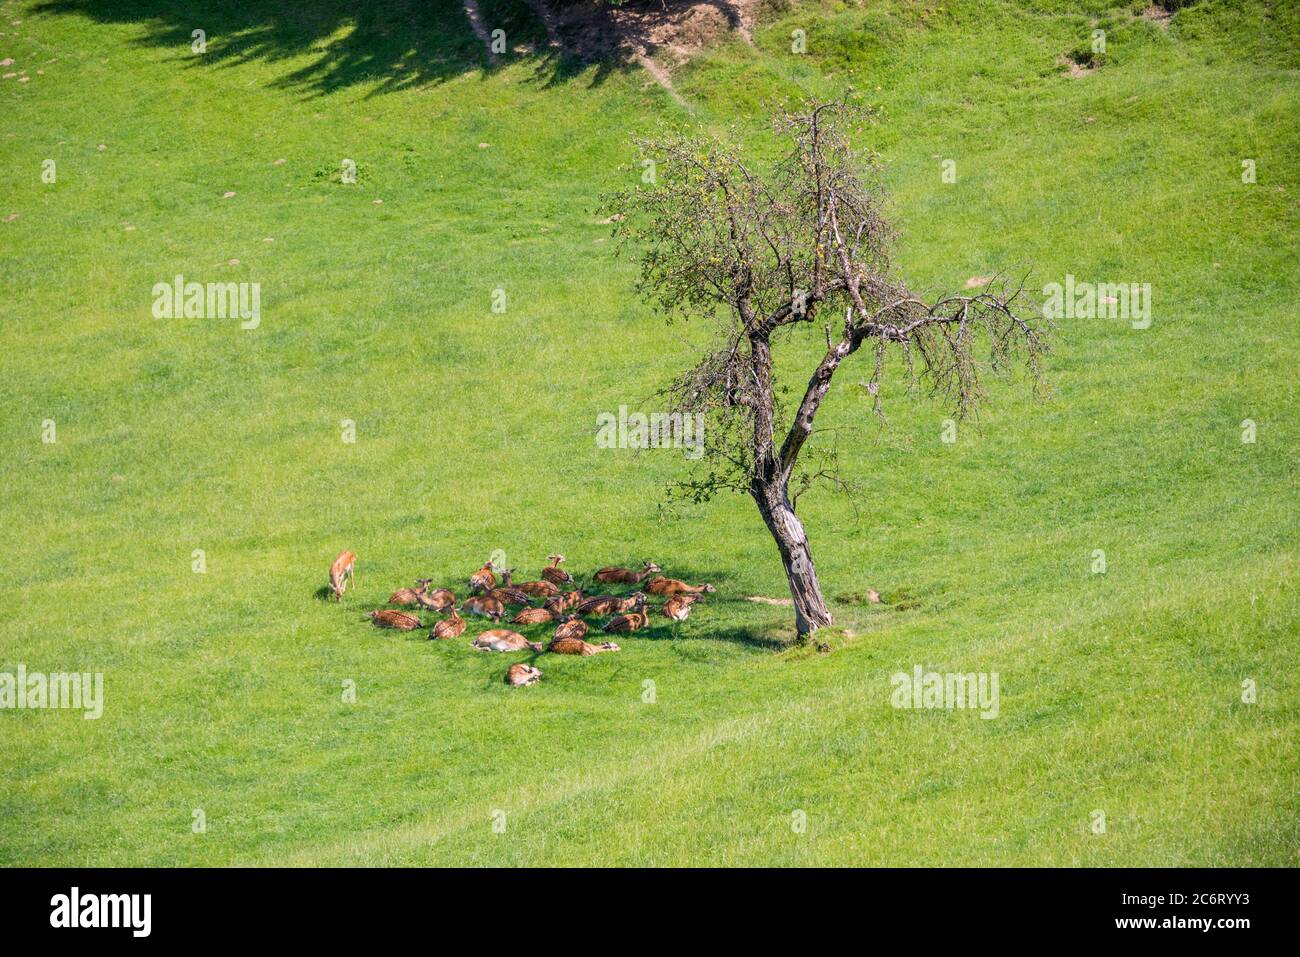 Jelenov greben, cervi che riposano sul prato, allevamento di cervi a Olimje, Slovenia Foto Stock